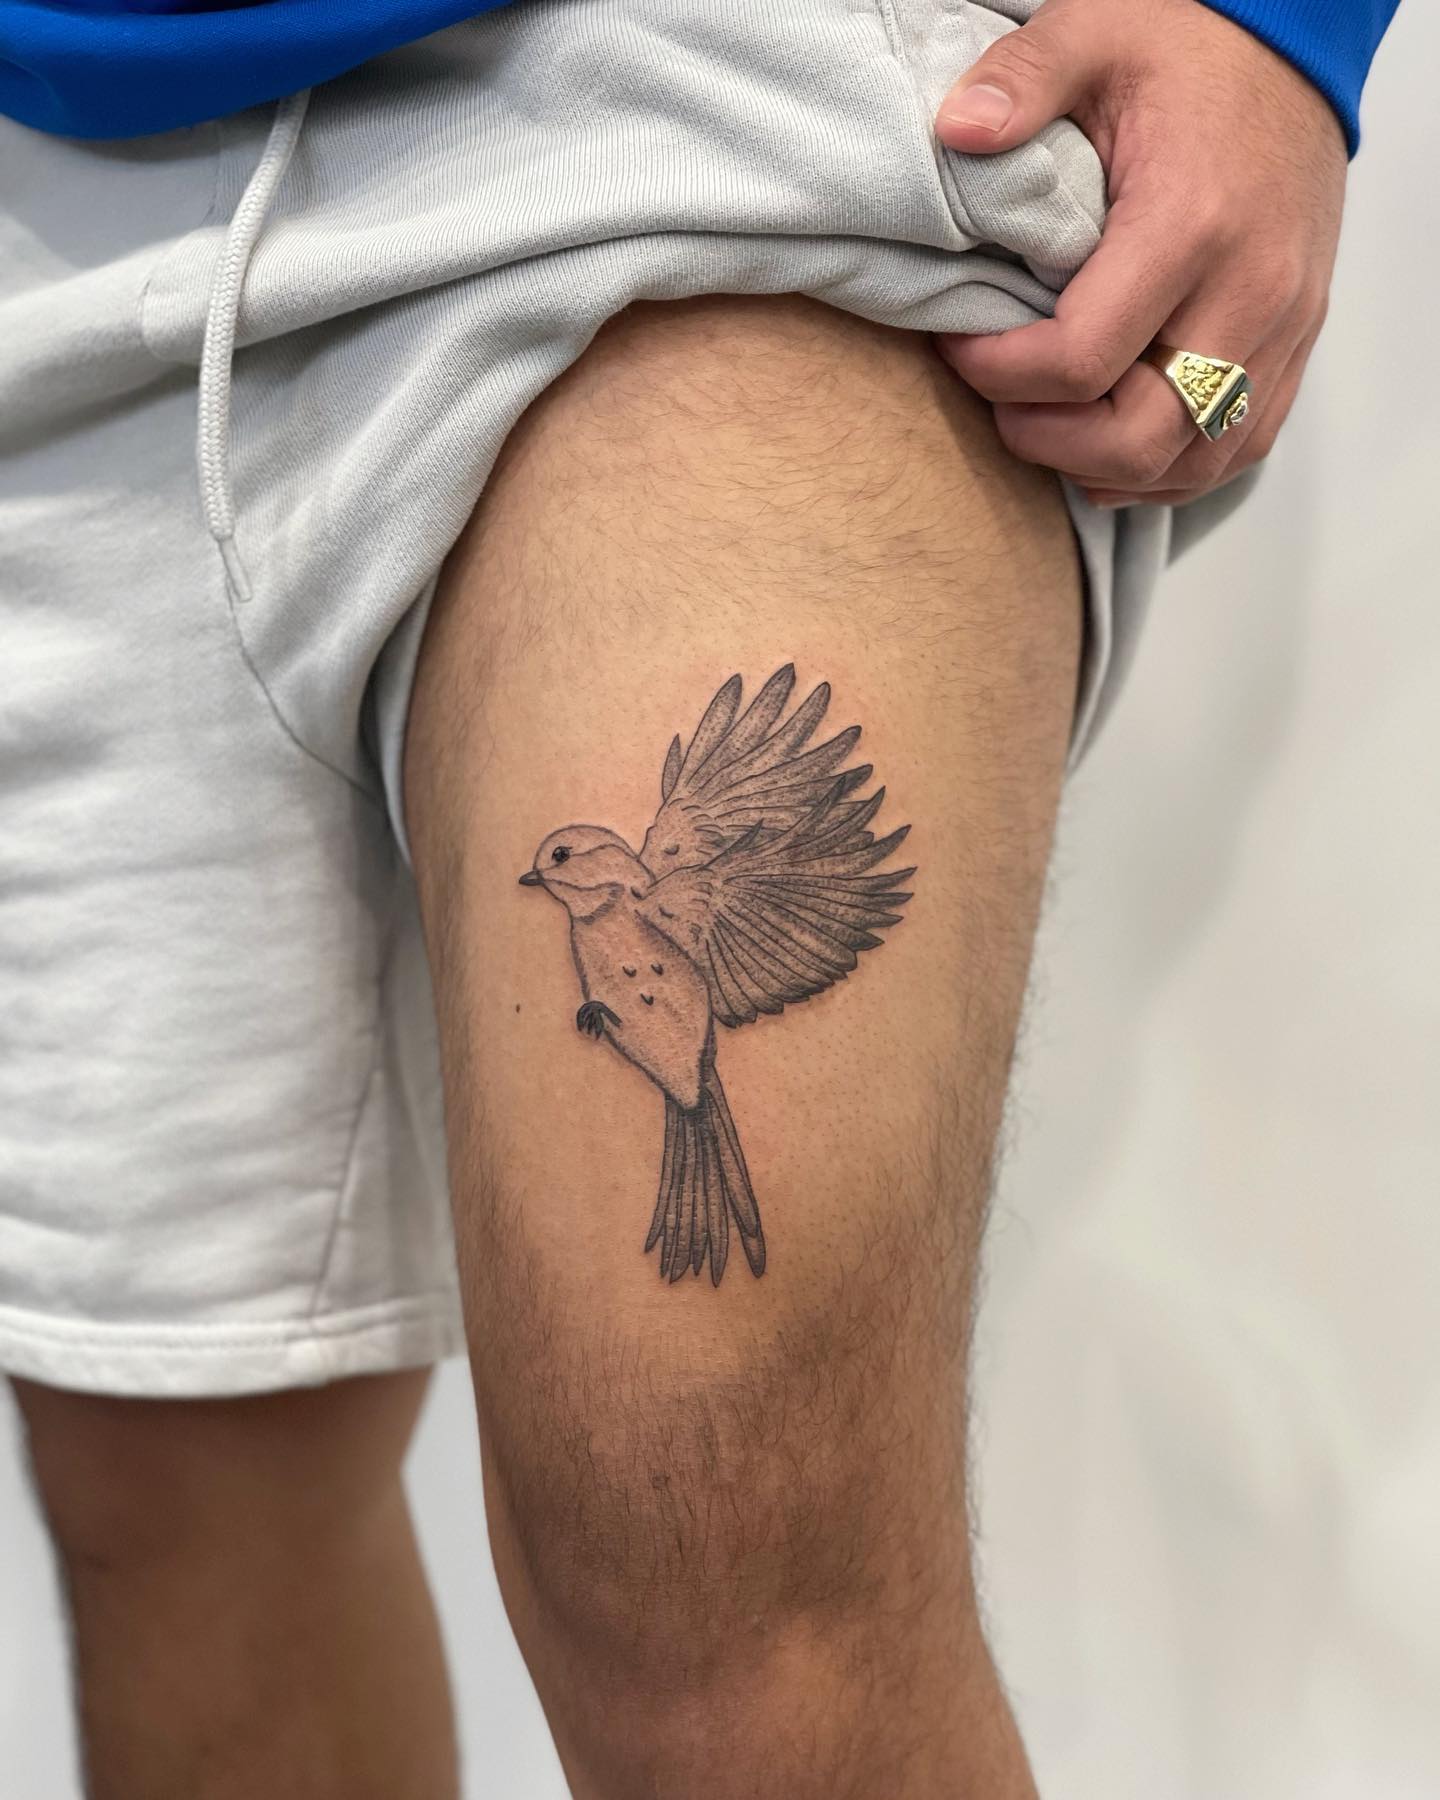 Tatuaje de pájaro en el muslo.